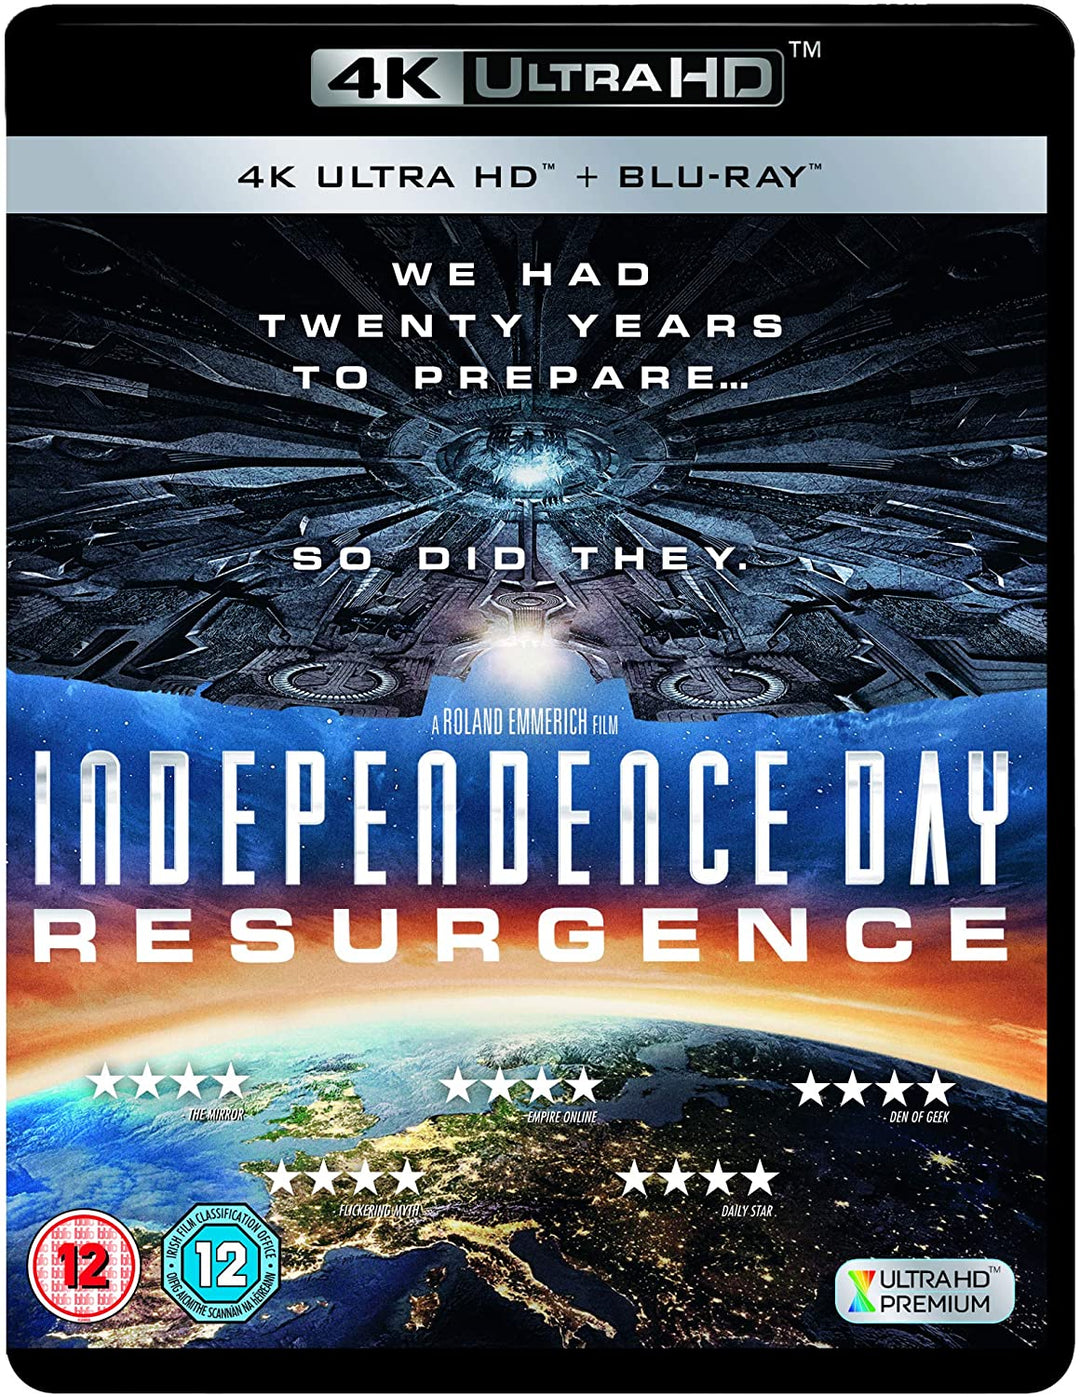 Onafhankelijkheidsdag heropleving [Blu-ray]